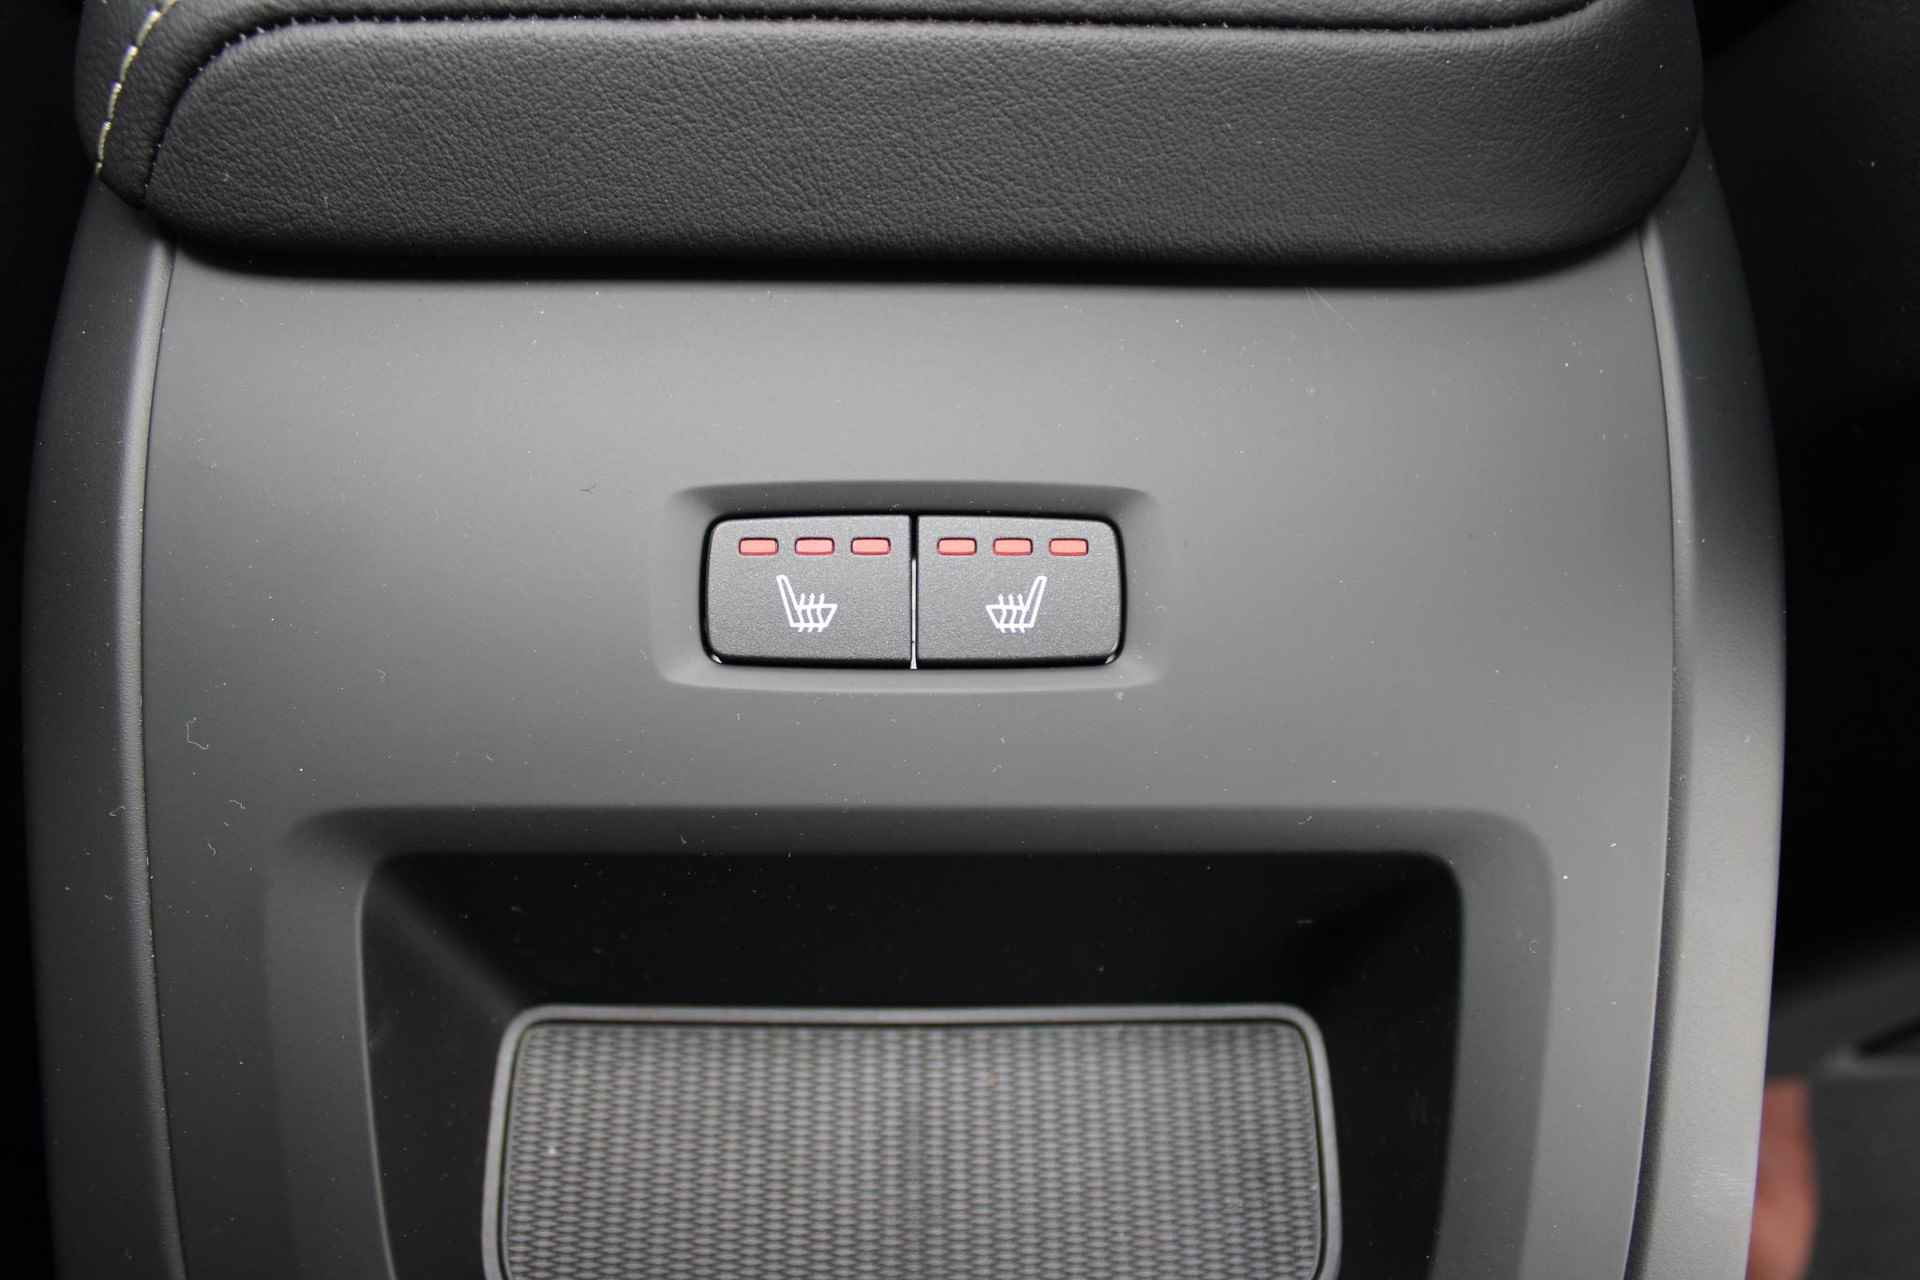 Volvo XC60 Recharge T6 AWD 350PK AUT8 Plus Black Edition, Luchtvering, Adaptieve Cruise Control met Pilot Assist, Premium audio by Harman Kardon, Elektrisch bedienbaar panoramisch schuif-/kanteldak, Elektrische bestuurdersstoel met geheugen, Verwarmbare voorstoelen + stuurwiel, 360 Parkeercamera, Park Assist voor + achter, Verwarmbare achterbank, 21'' Lichtmetalen wielen - 15/36